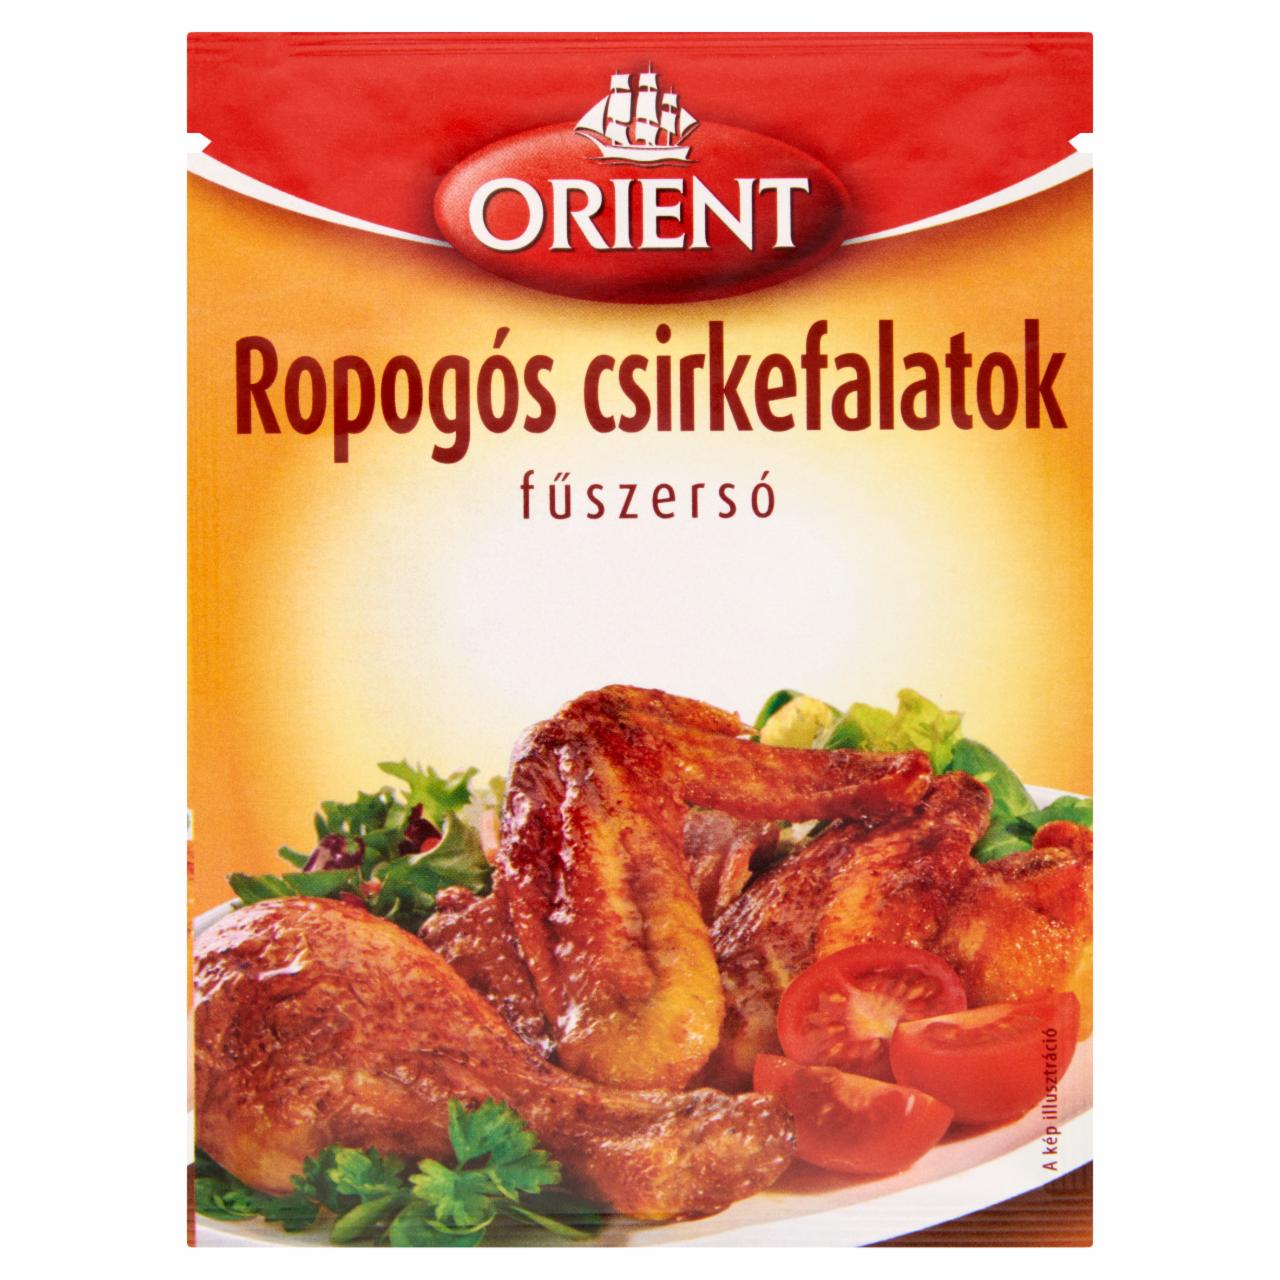 Képek - Orient ropogós csirkefalatok fűszersó 20 g